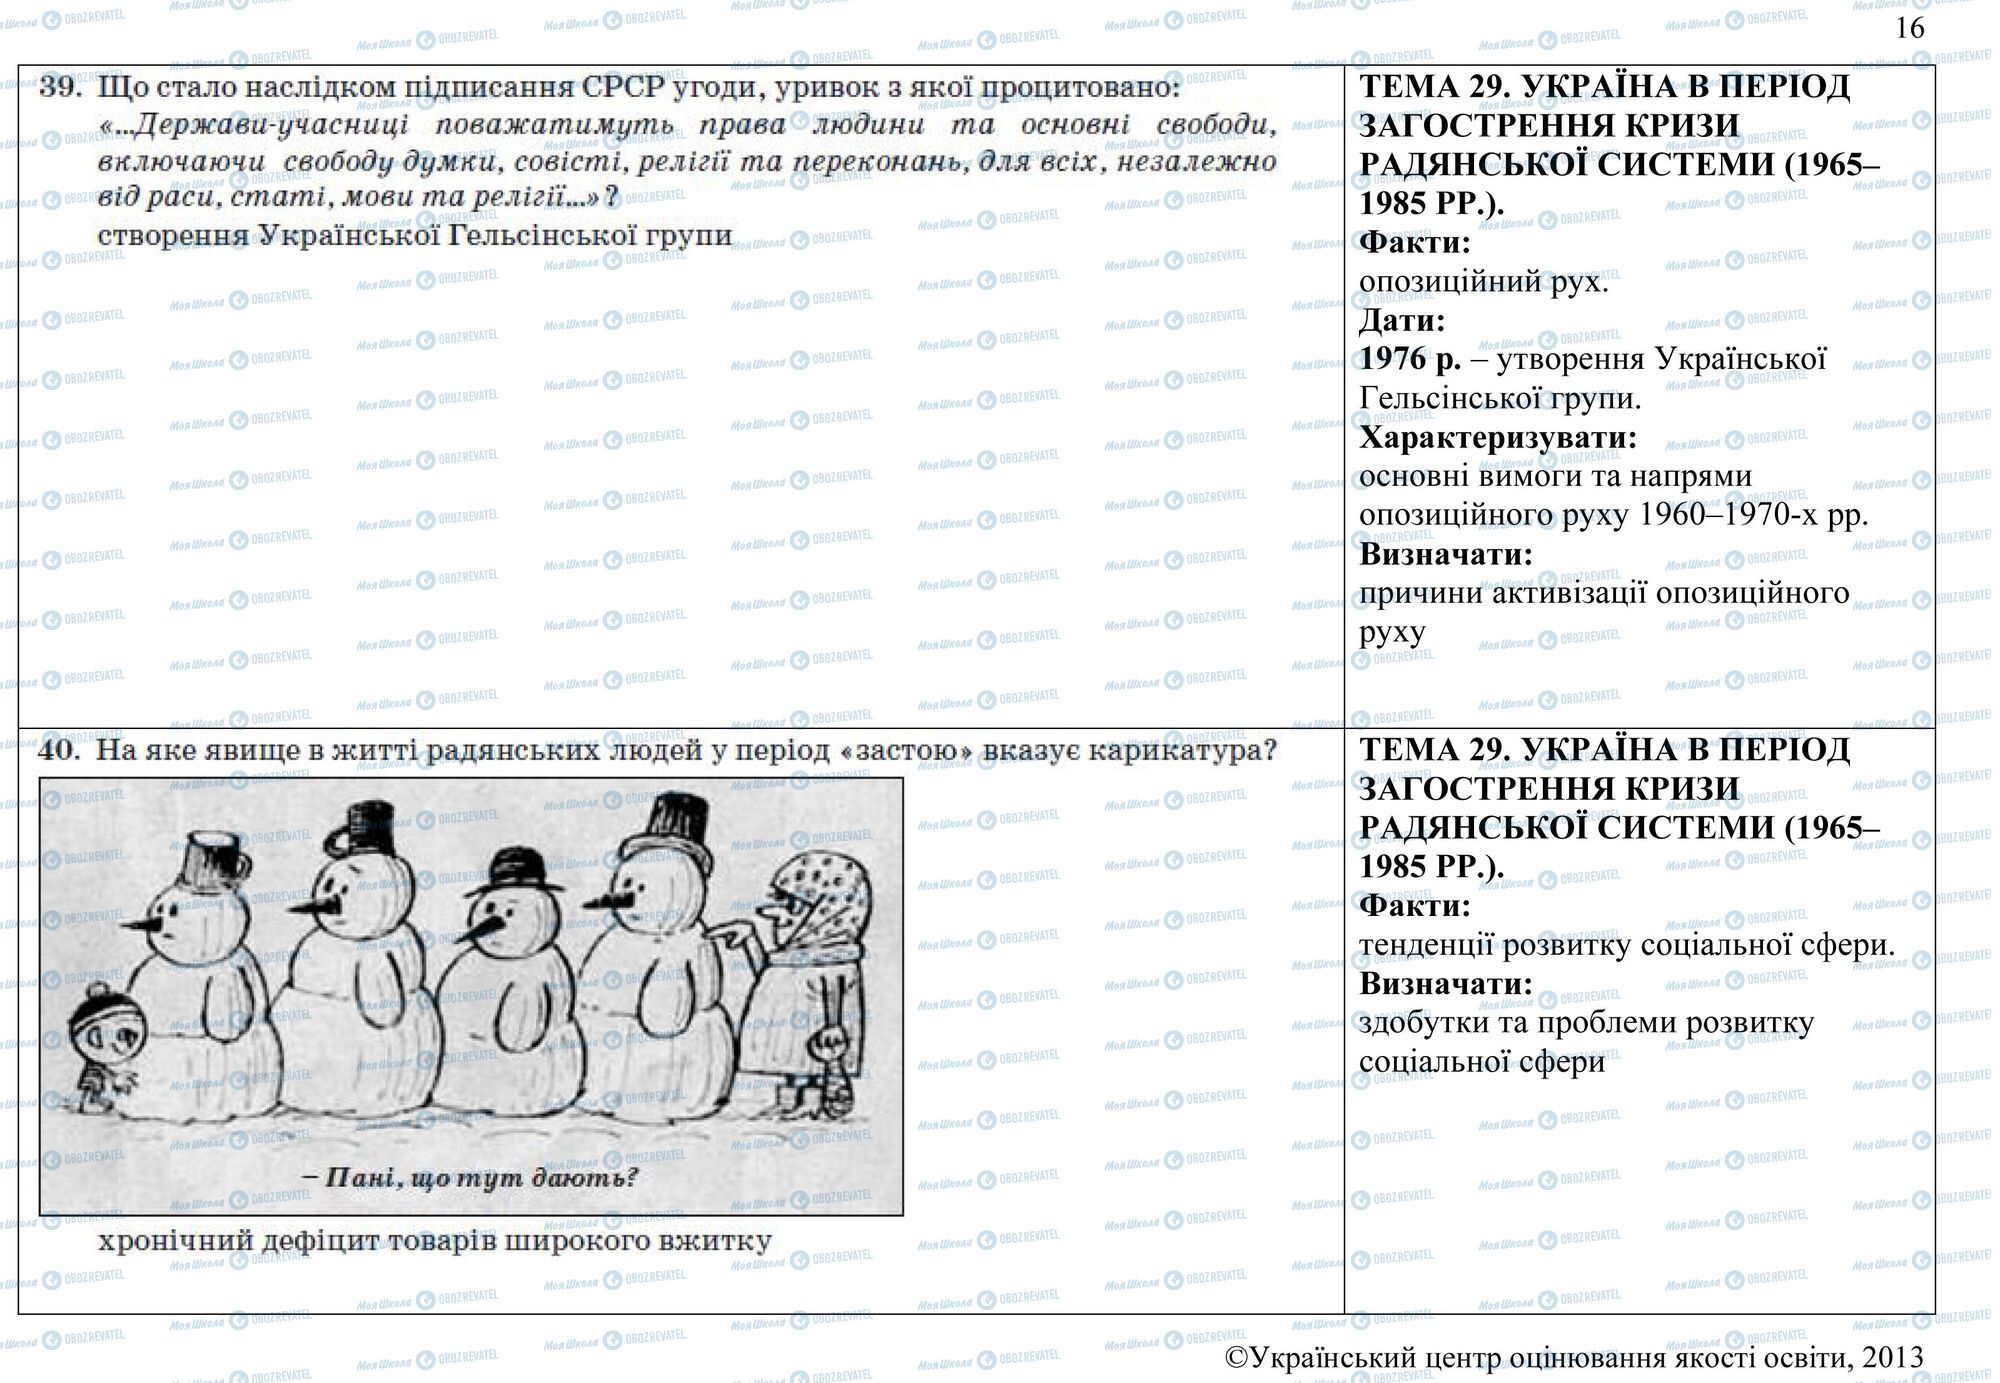 ЗНО История Украины 11 класс страница 39-40